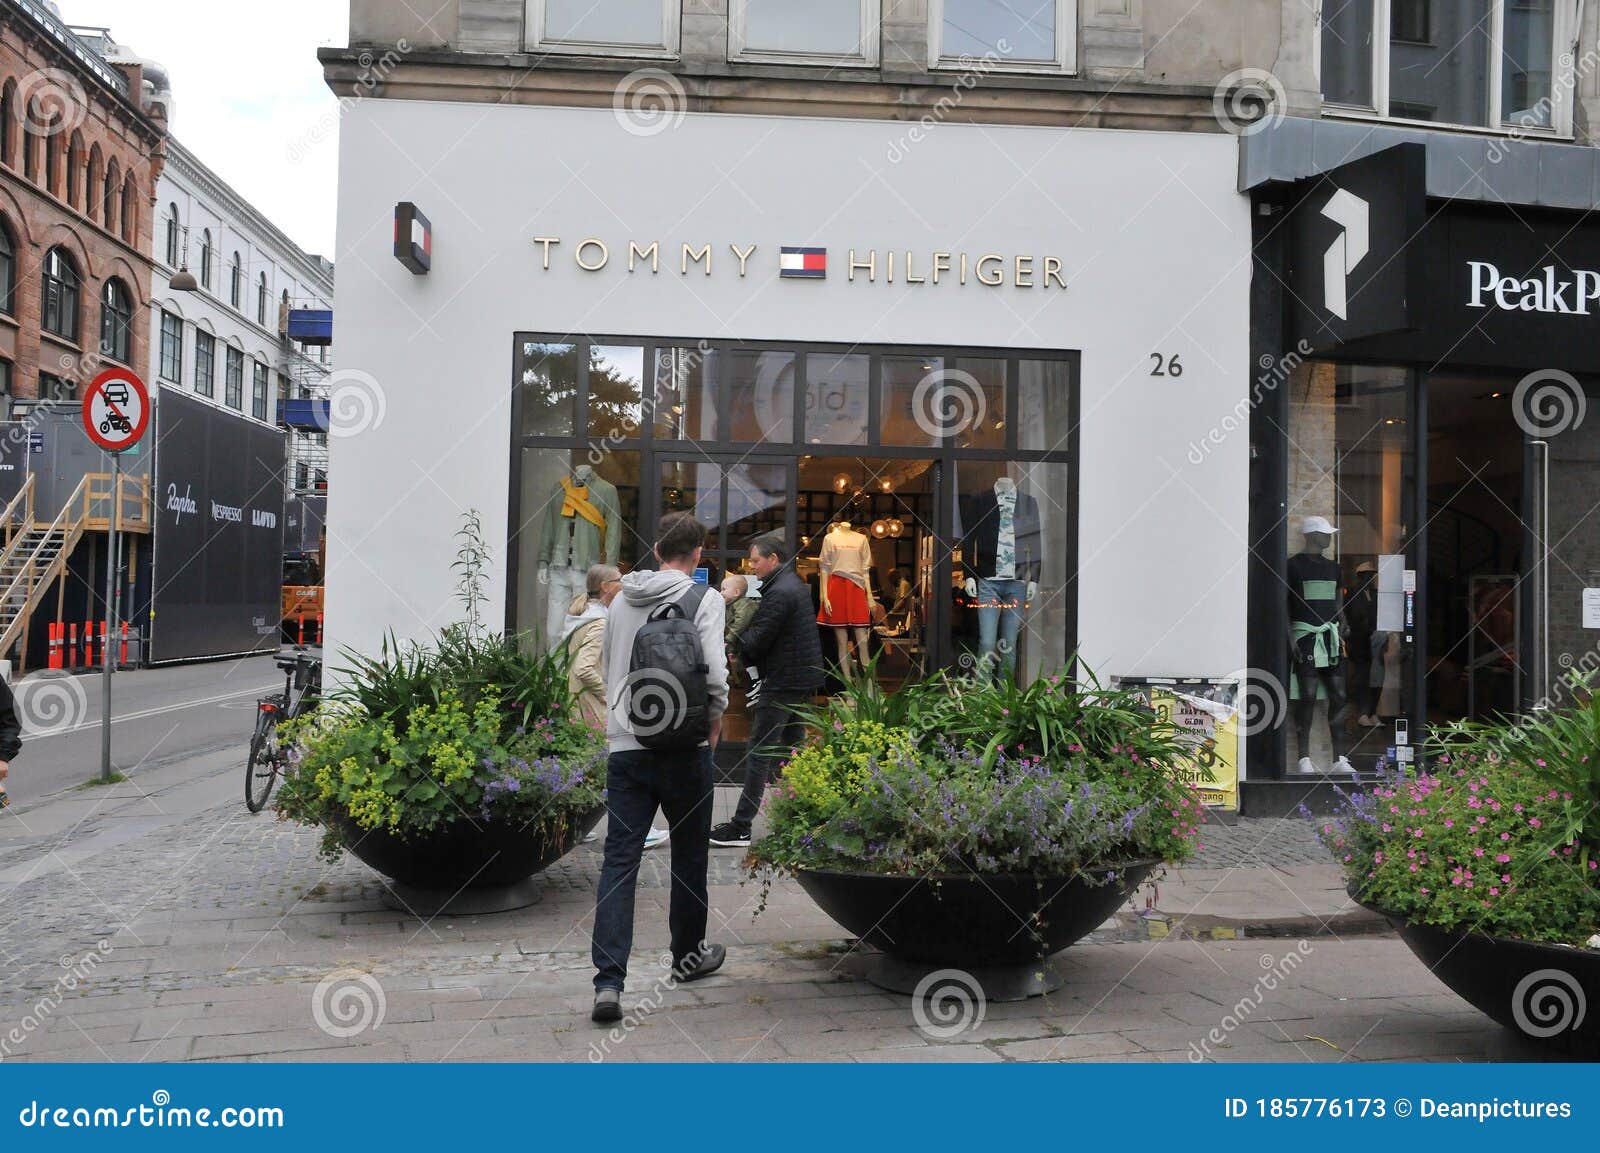 Tommy Hilfiger Storeon Strieget in Copenhagen Denmark Editorial Stock Photo - Image of kobenhavn, business: